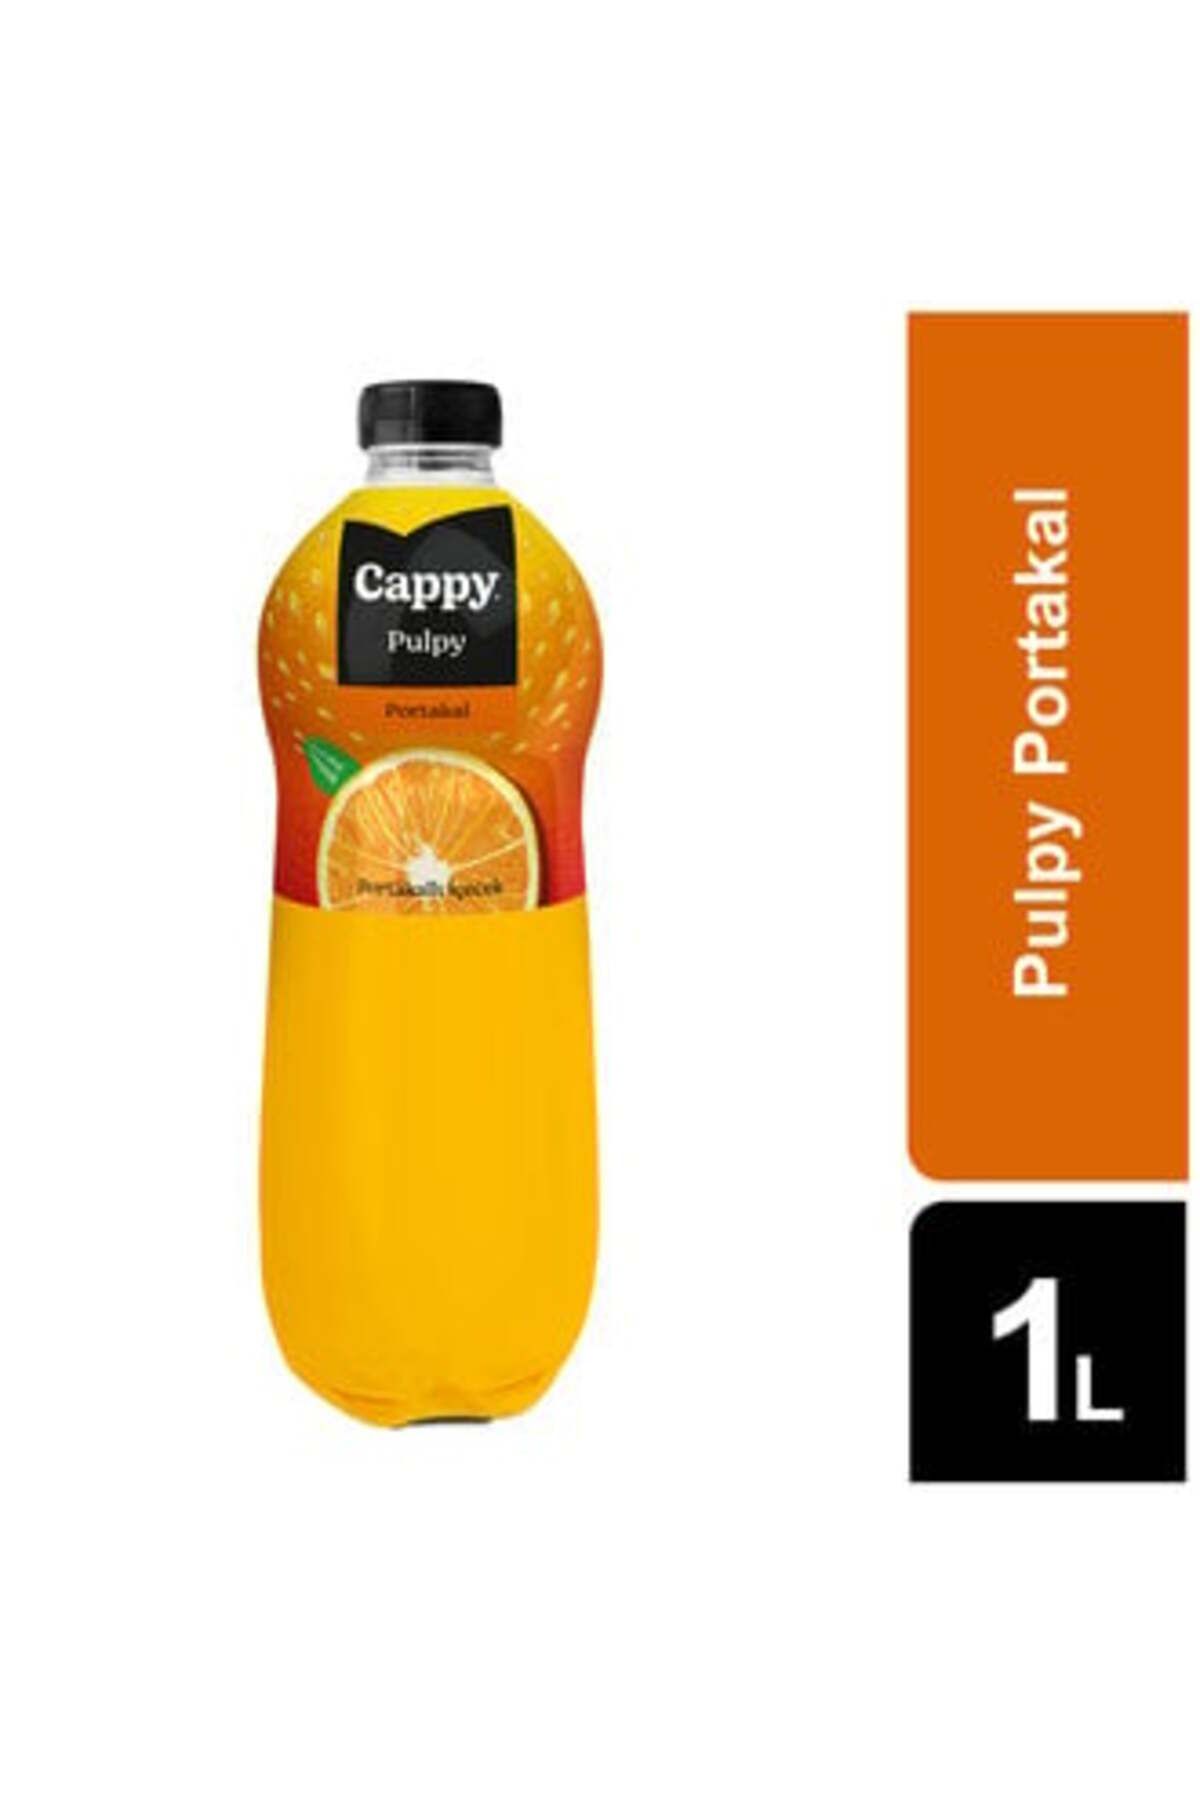 Cappy Pulpy Portakallı Meyve Suyu Pet 1 L ( 1 ADET )